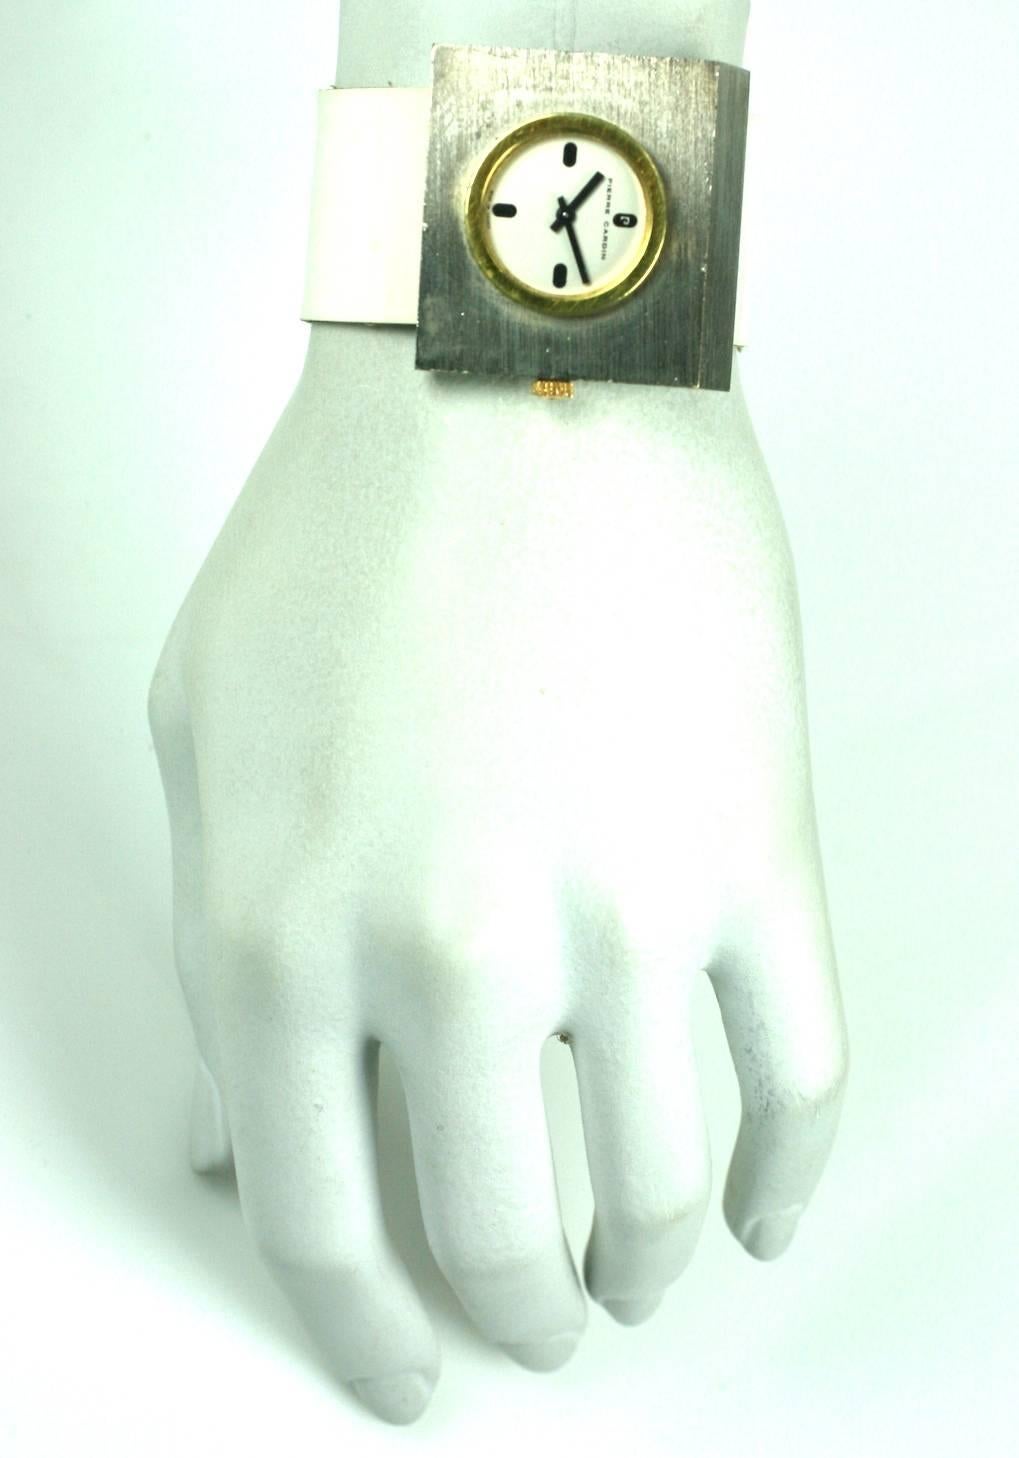 Modernist Pierre Cardin Space Watch For Sale